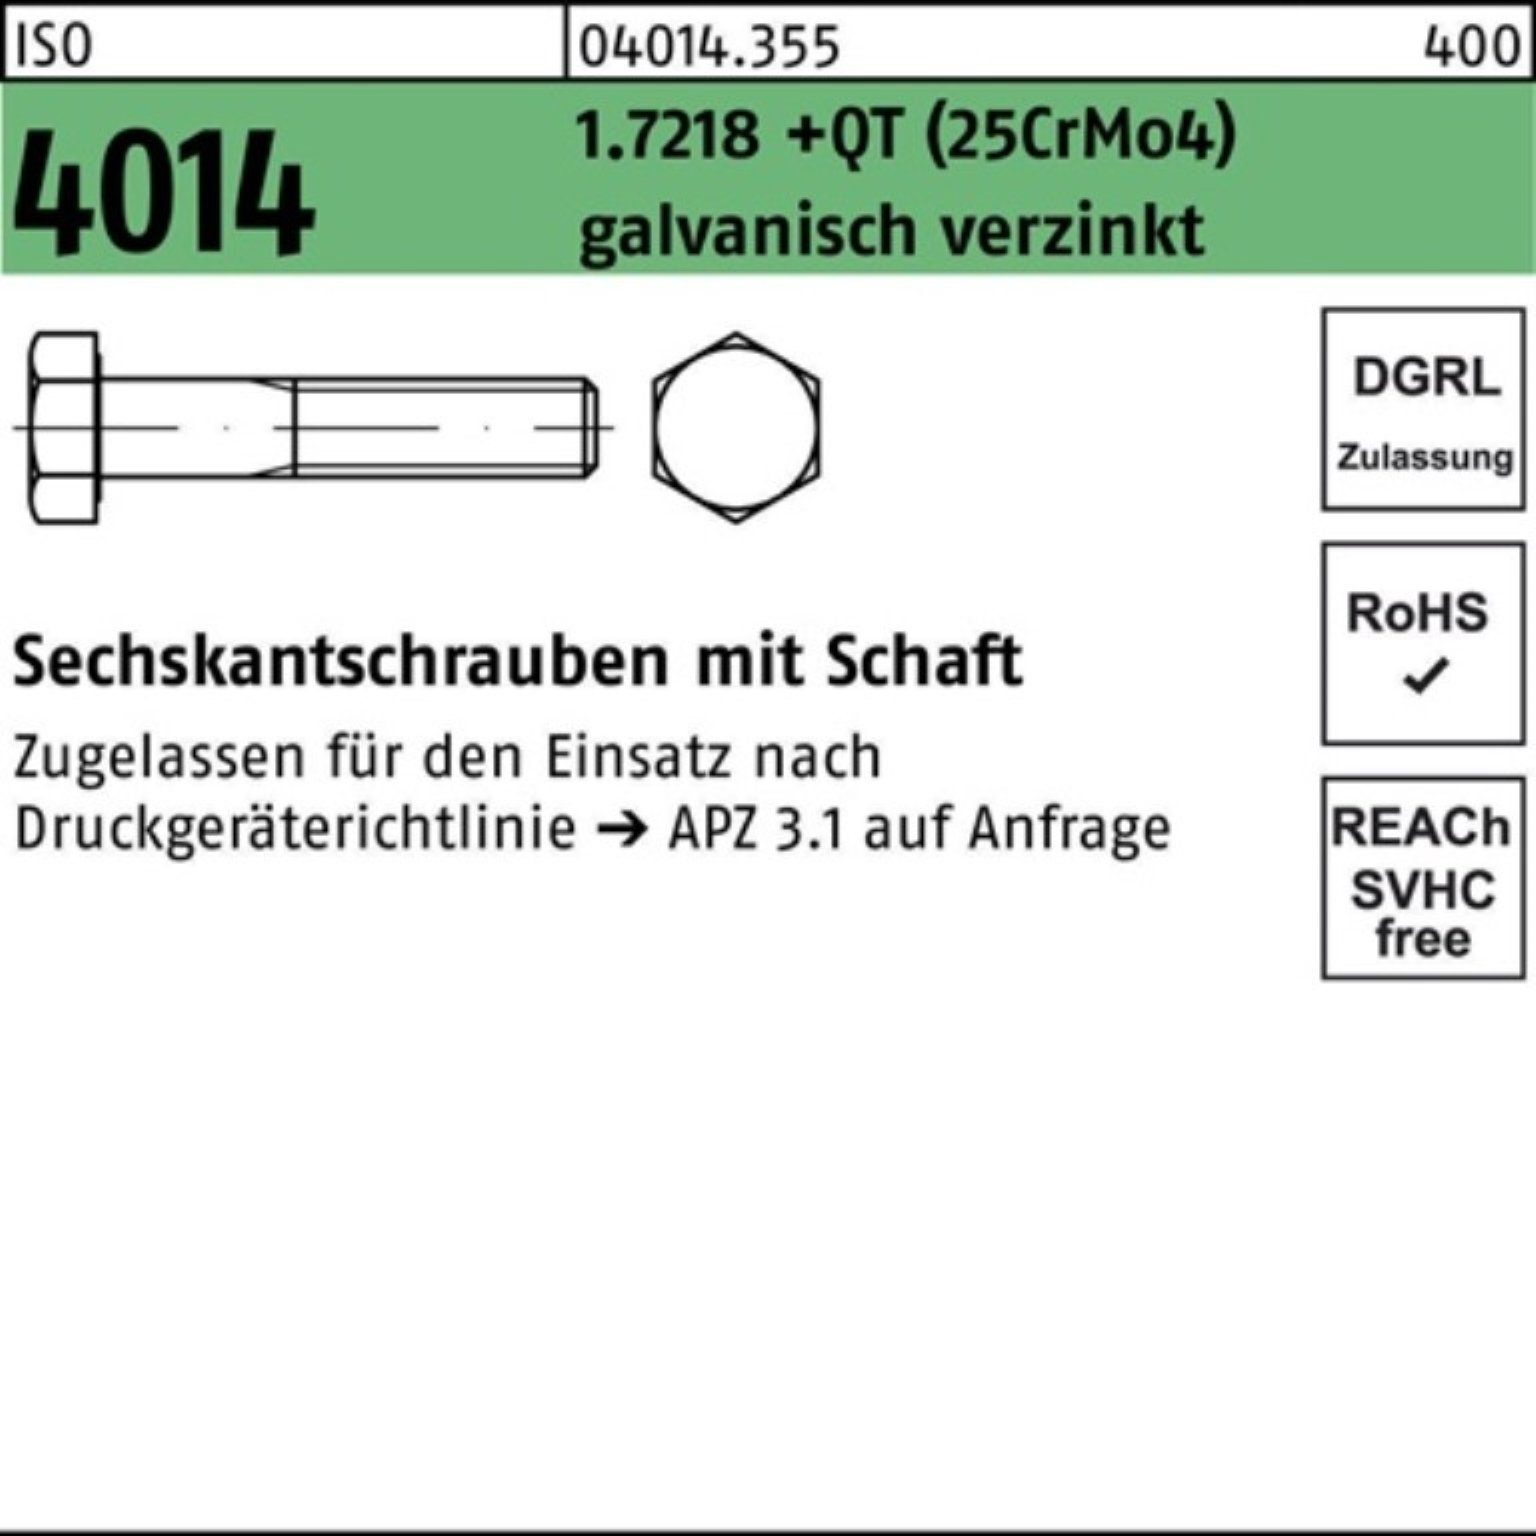 (25CrM Bufab ISO 4014 Sechskantschraube 100er Pack 1.7218 Schaft Sechskantschraube +QT M27x170